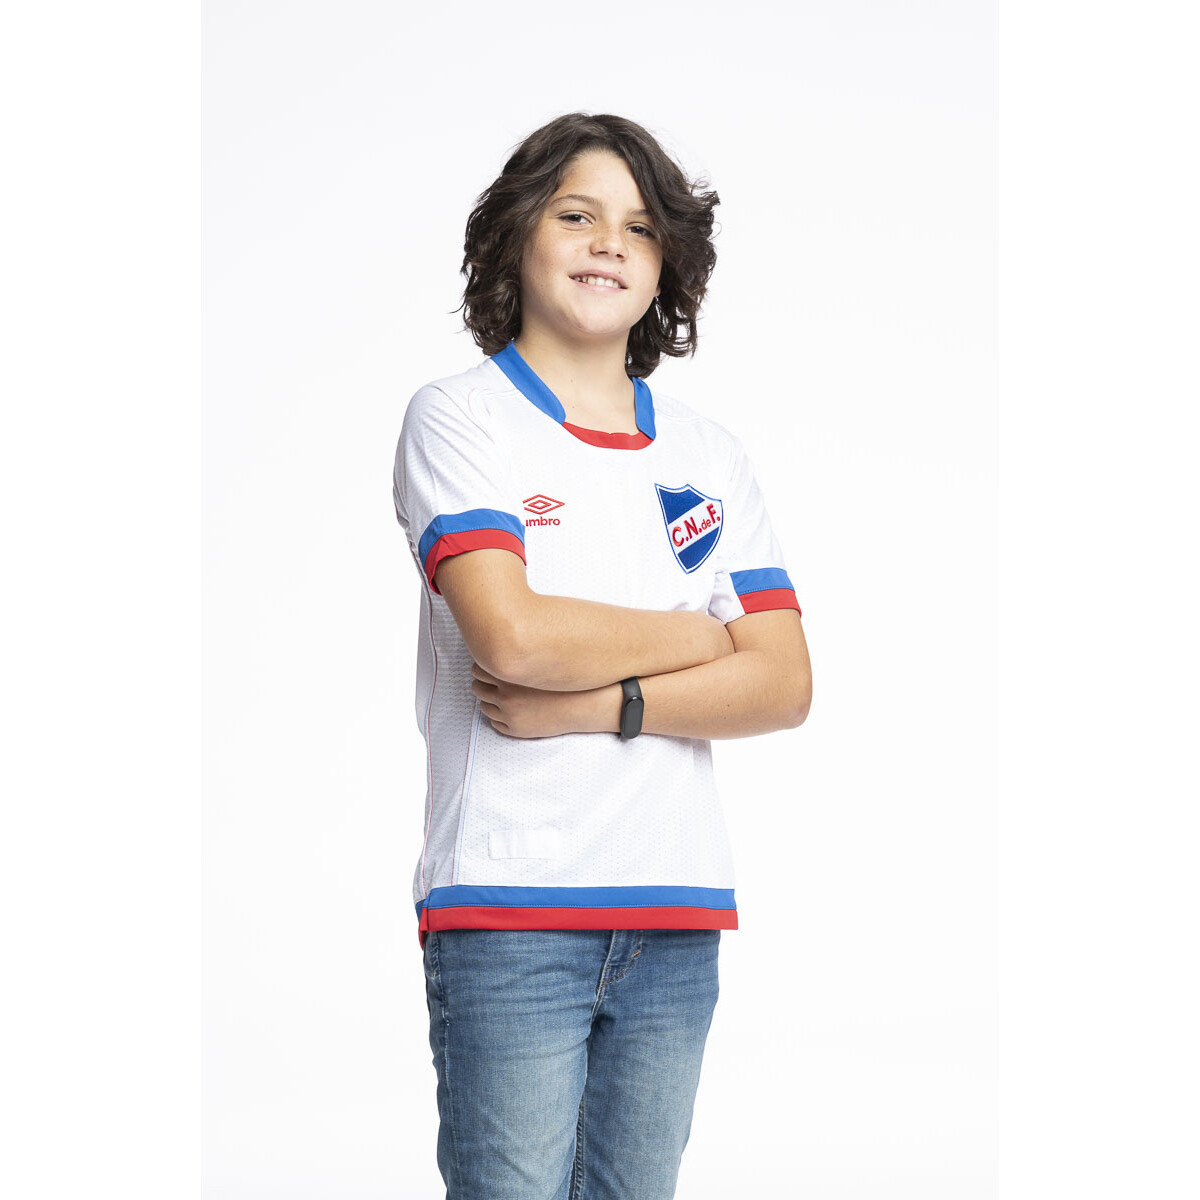 Camiseta Of. Nacional Junior - 0v4 